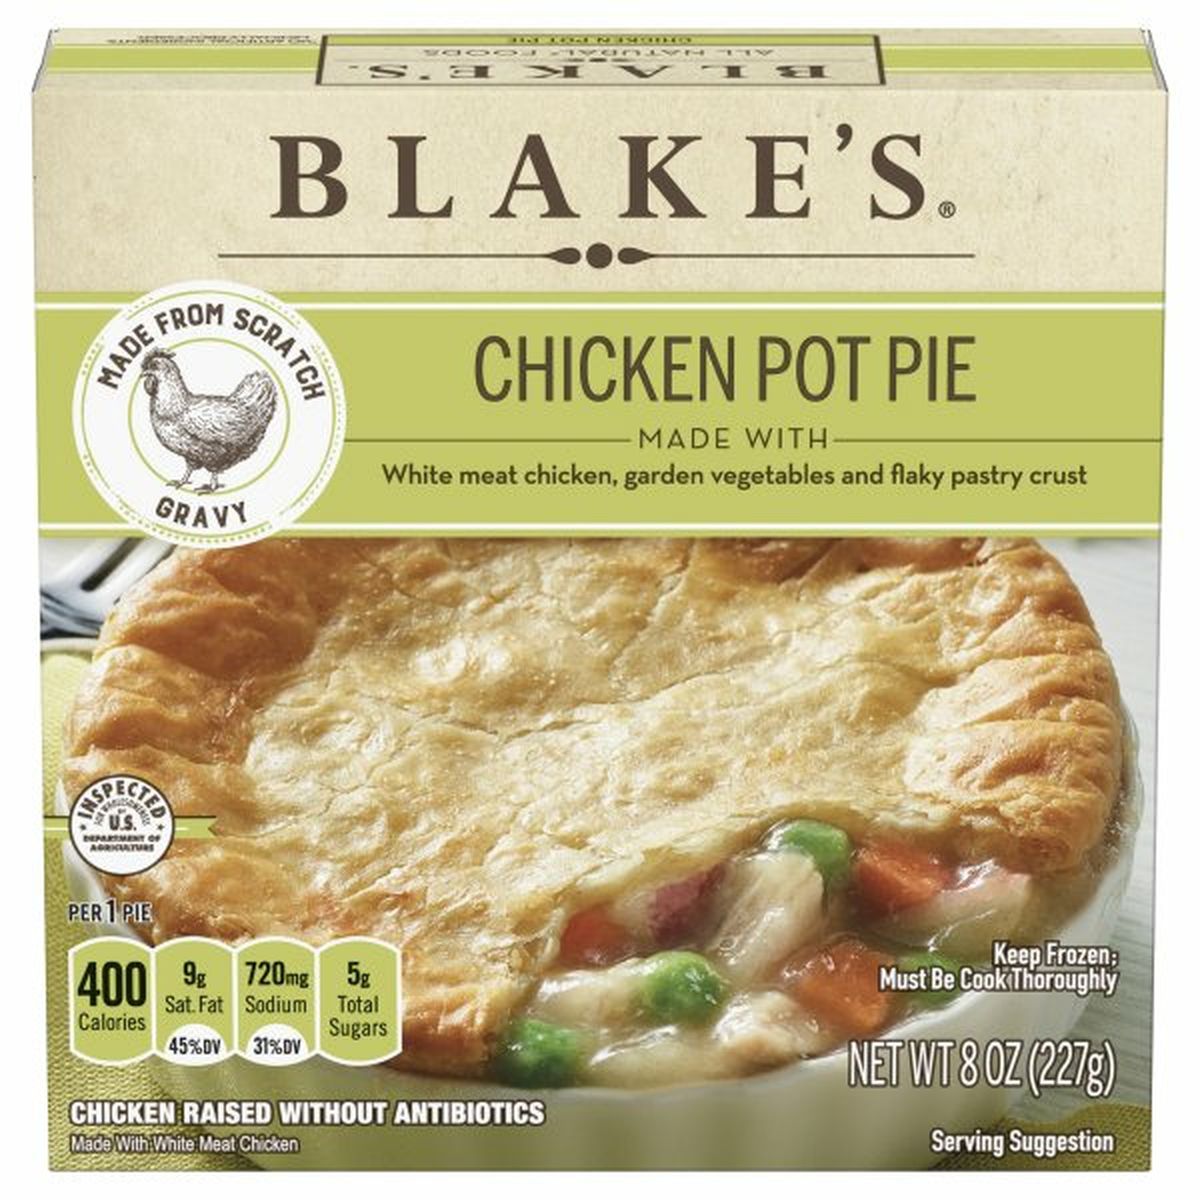 Calories in Blake's Chicken Pot Pie